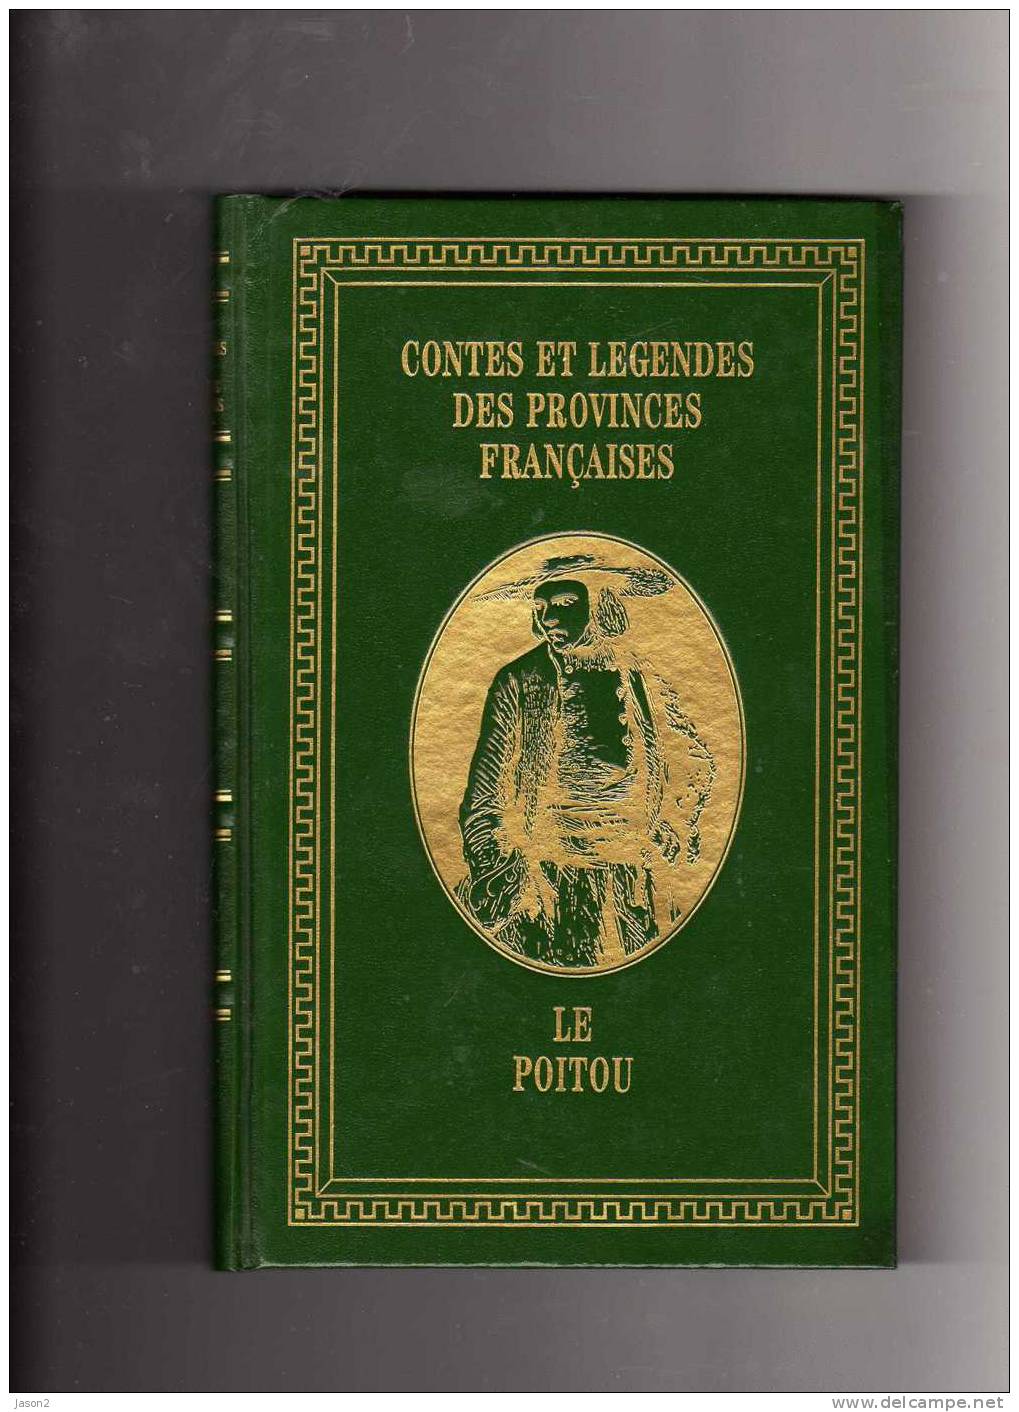 Livre Contes Et Legendes Des Provinces Francaises ( Le Poitou) Par Leon Pineau  1996 - Poitou-Charentes